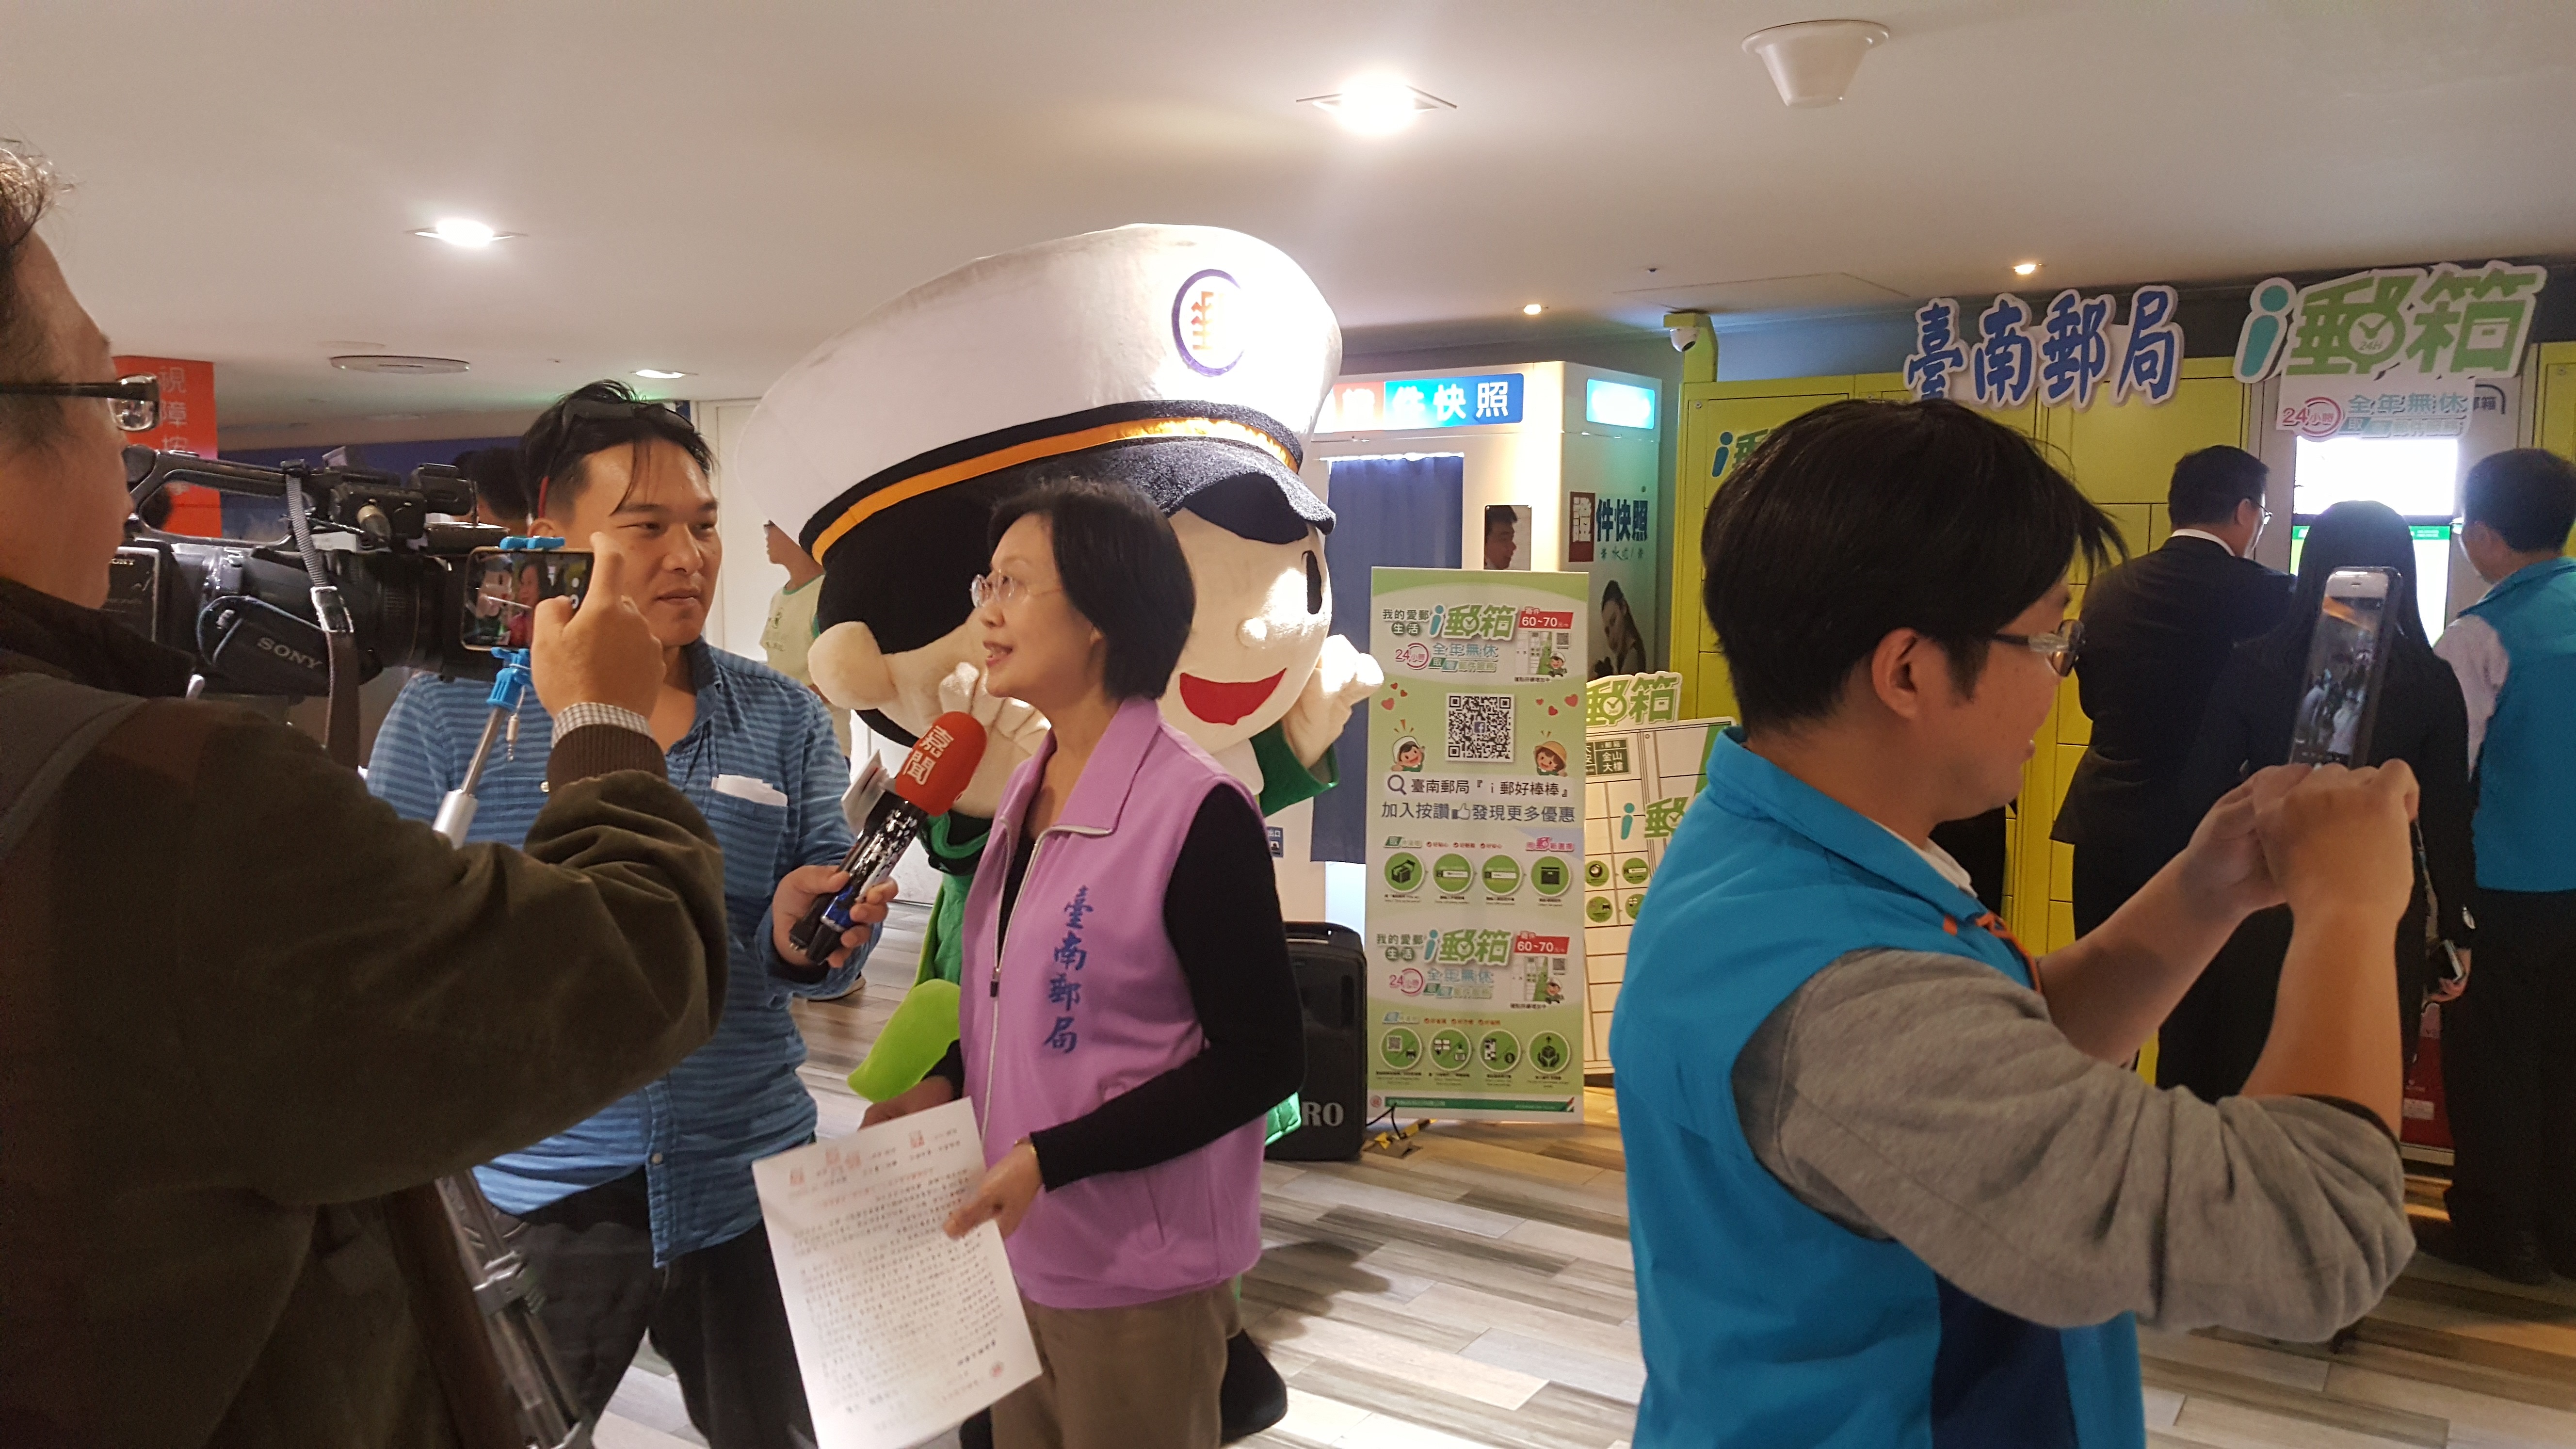 臺南郵局舉辦「南紡購物中心i郵箱體驗」活動